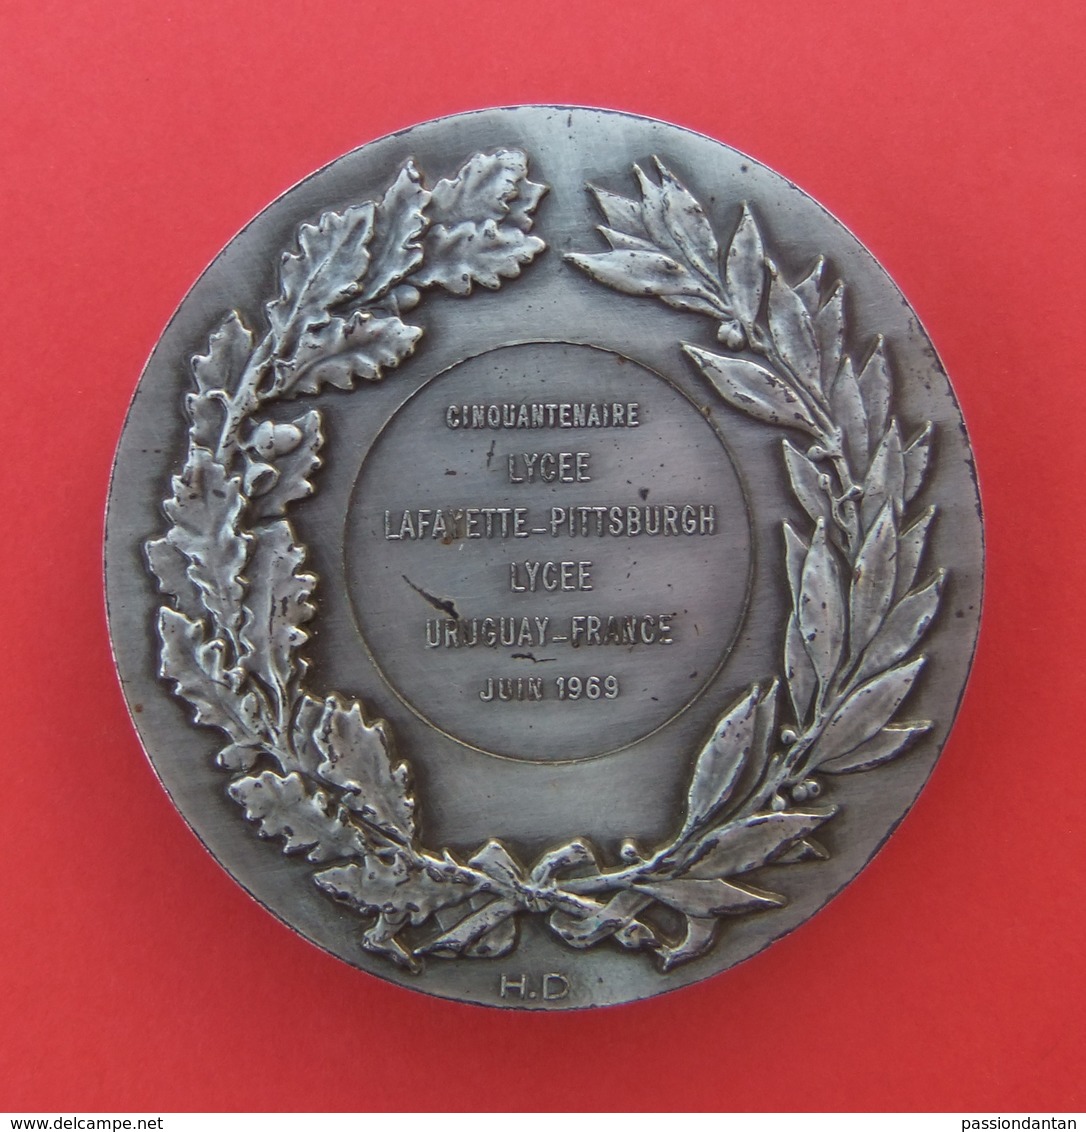 Médaille En Bronze - Cinquantenaire Lycée Lafayette Pittsburgh Lycée Uruguay France - Année 1969 - Professionals / Firms